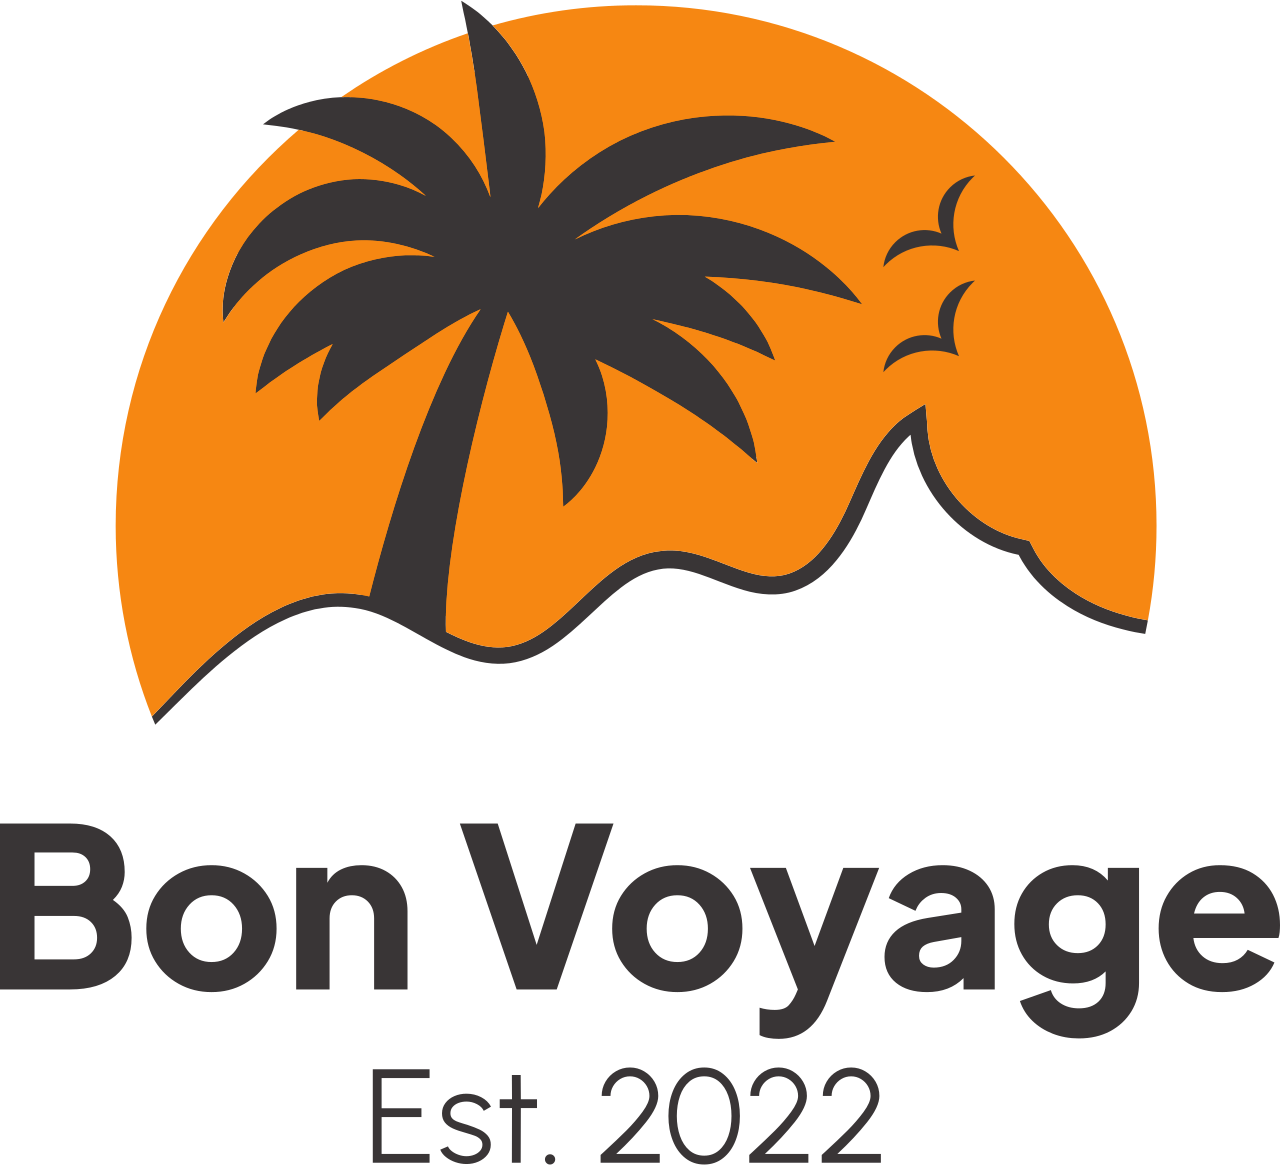 Bon Voyage's logo